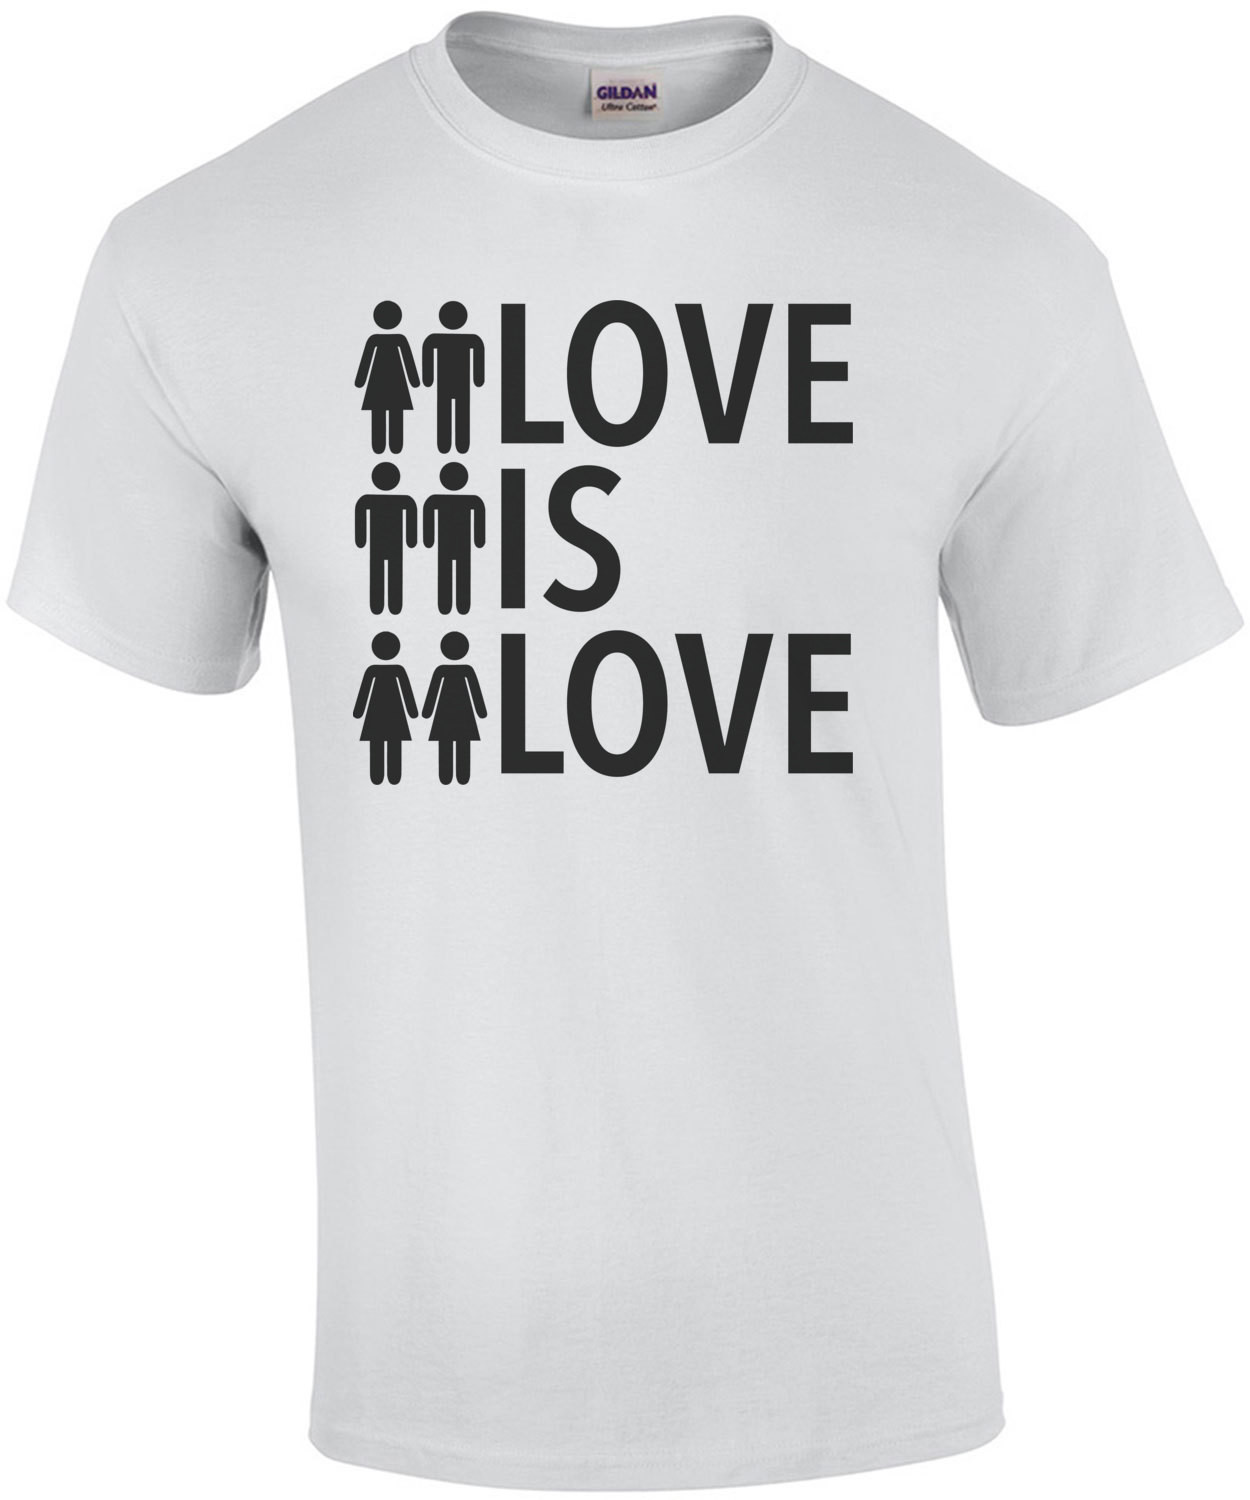 Love is love - gay pride t-shirt